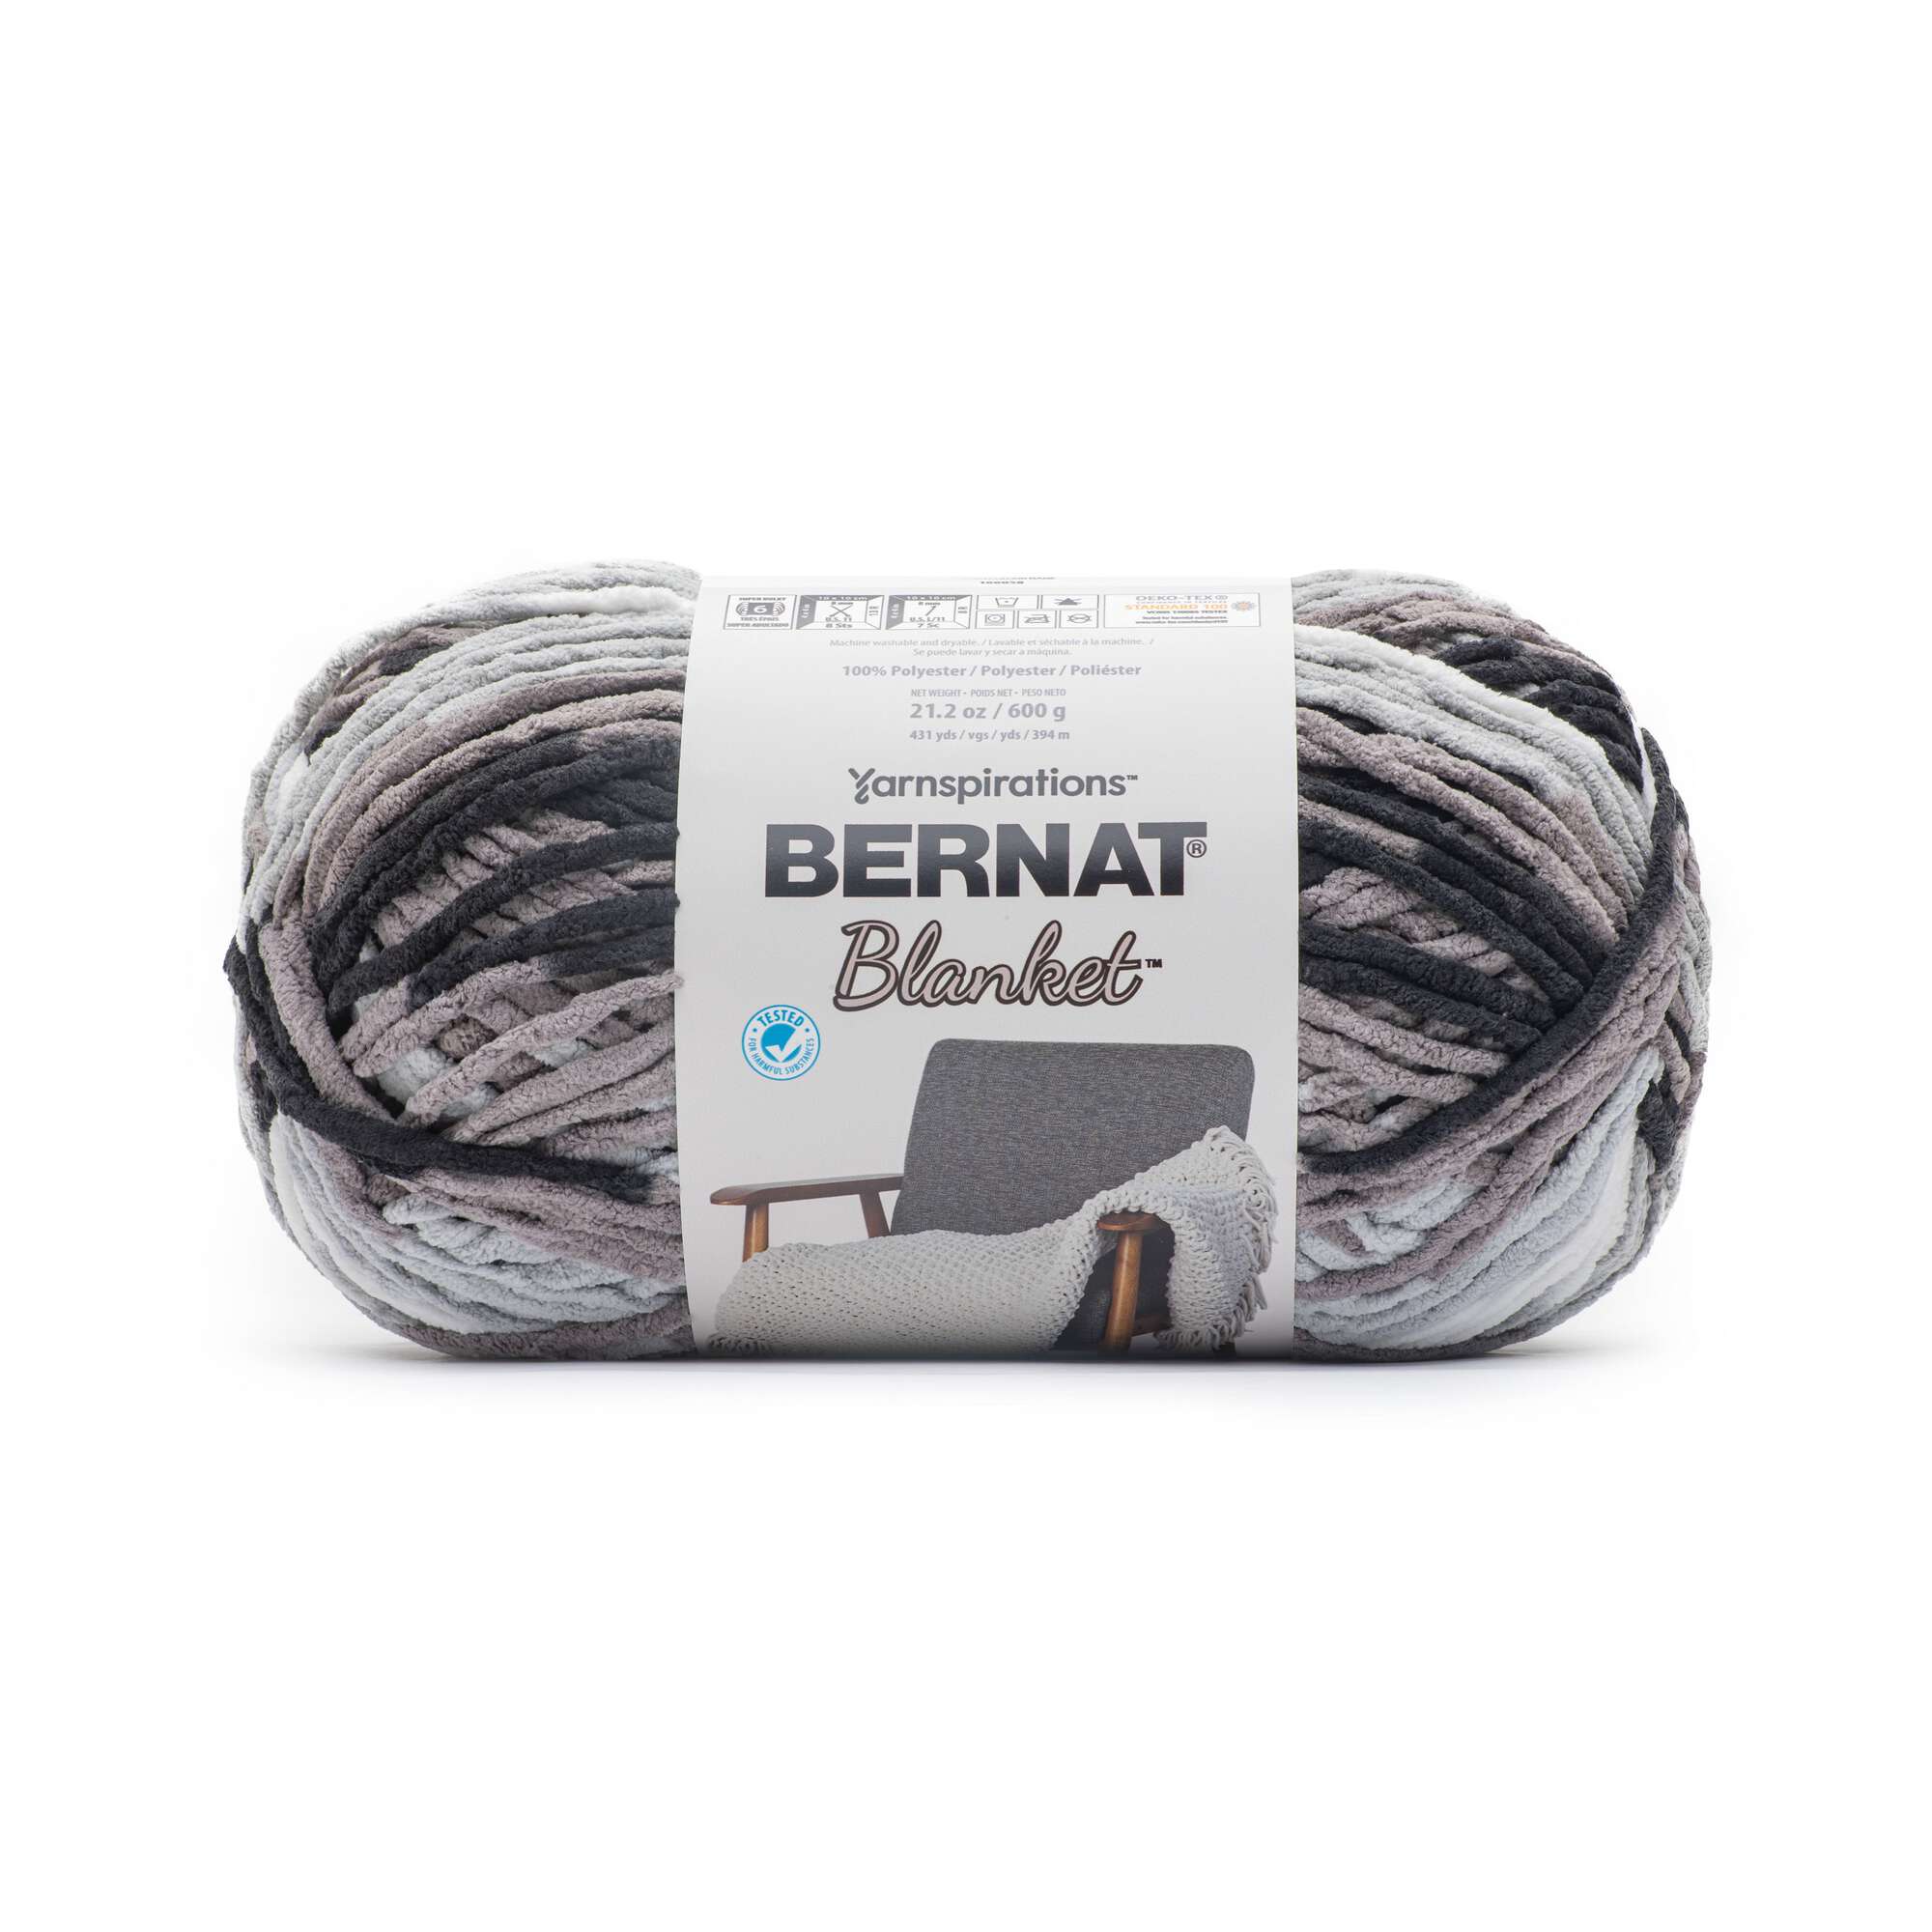 Bernat Blanket Extra Thick Yarn (600g/21.2 oz), Vintage White